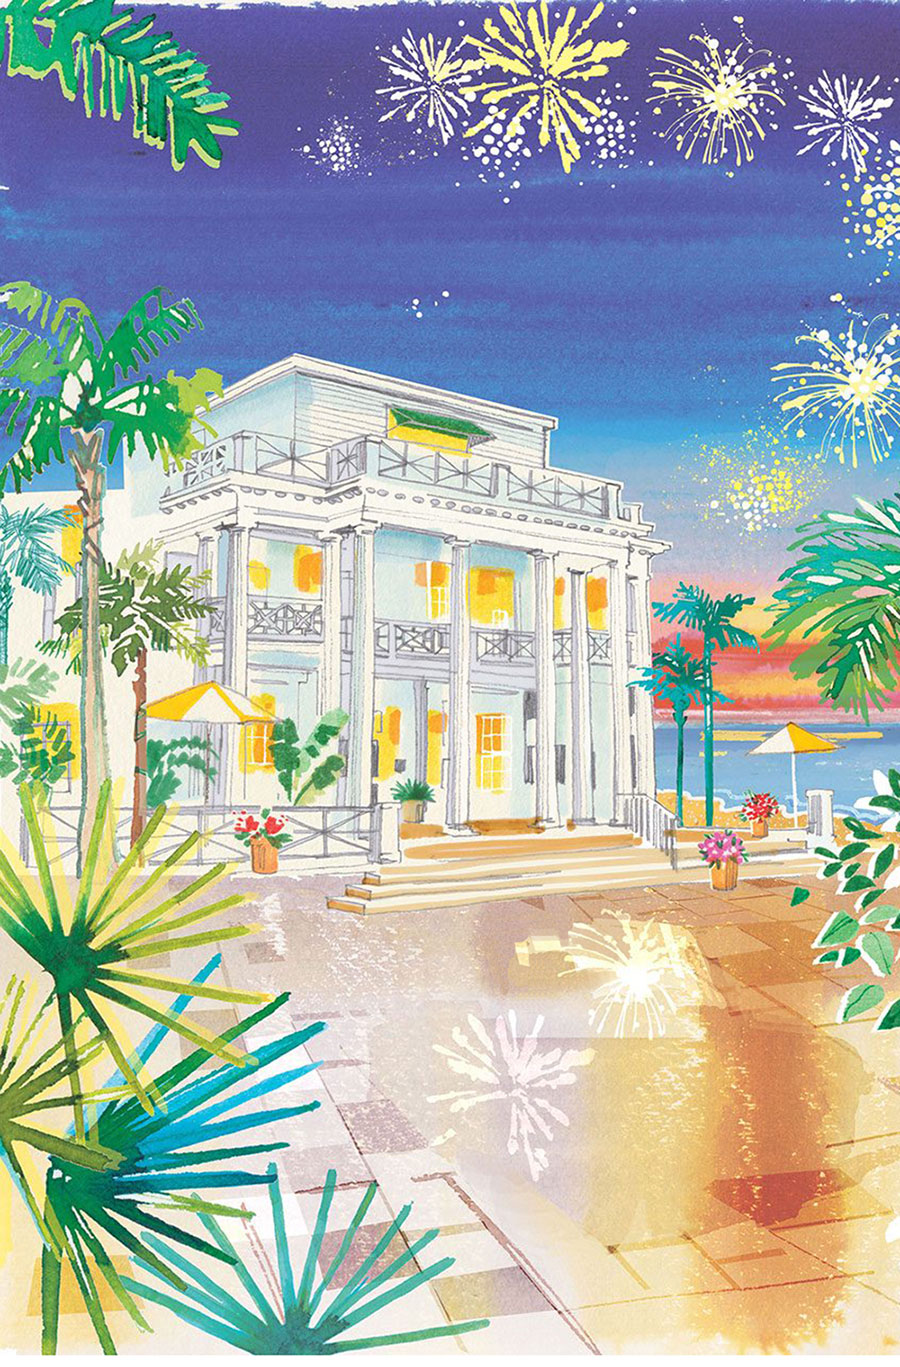 Watercolor illustration of Gasparilla Inn Hotel, Florida - private client 2022